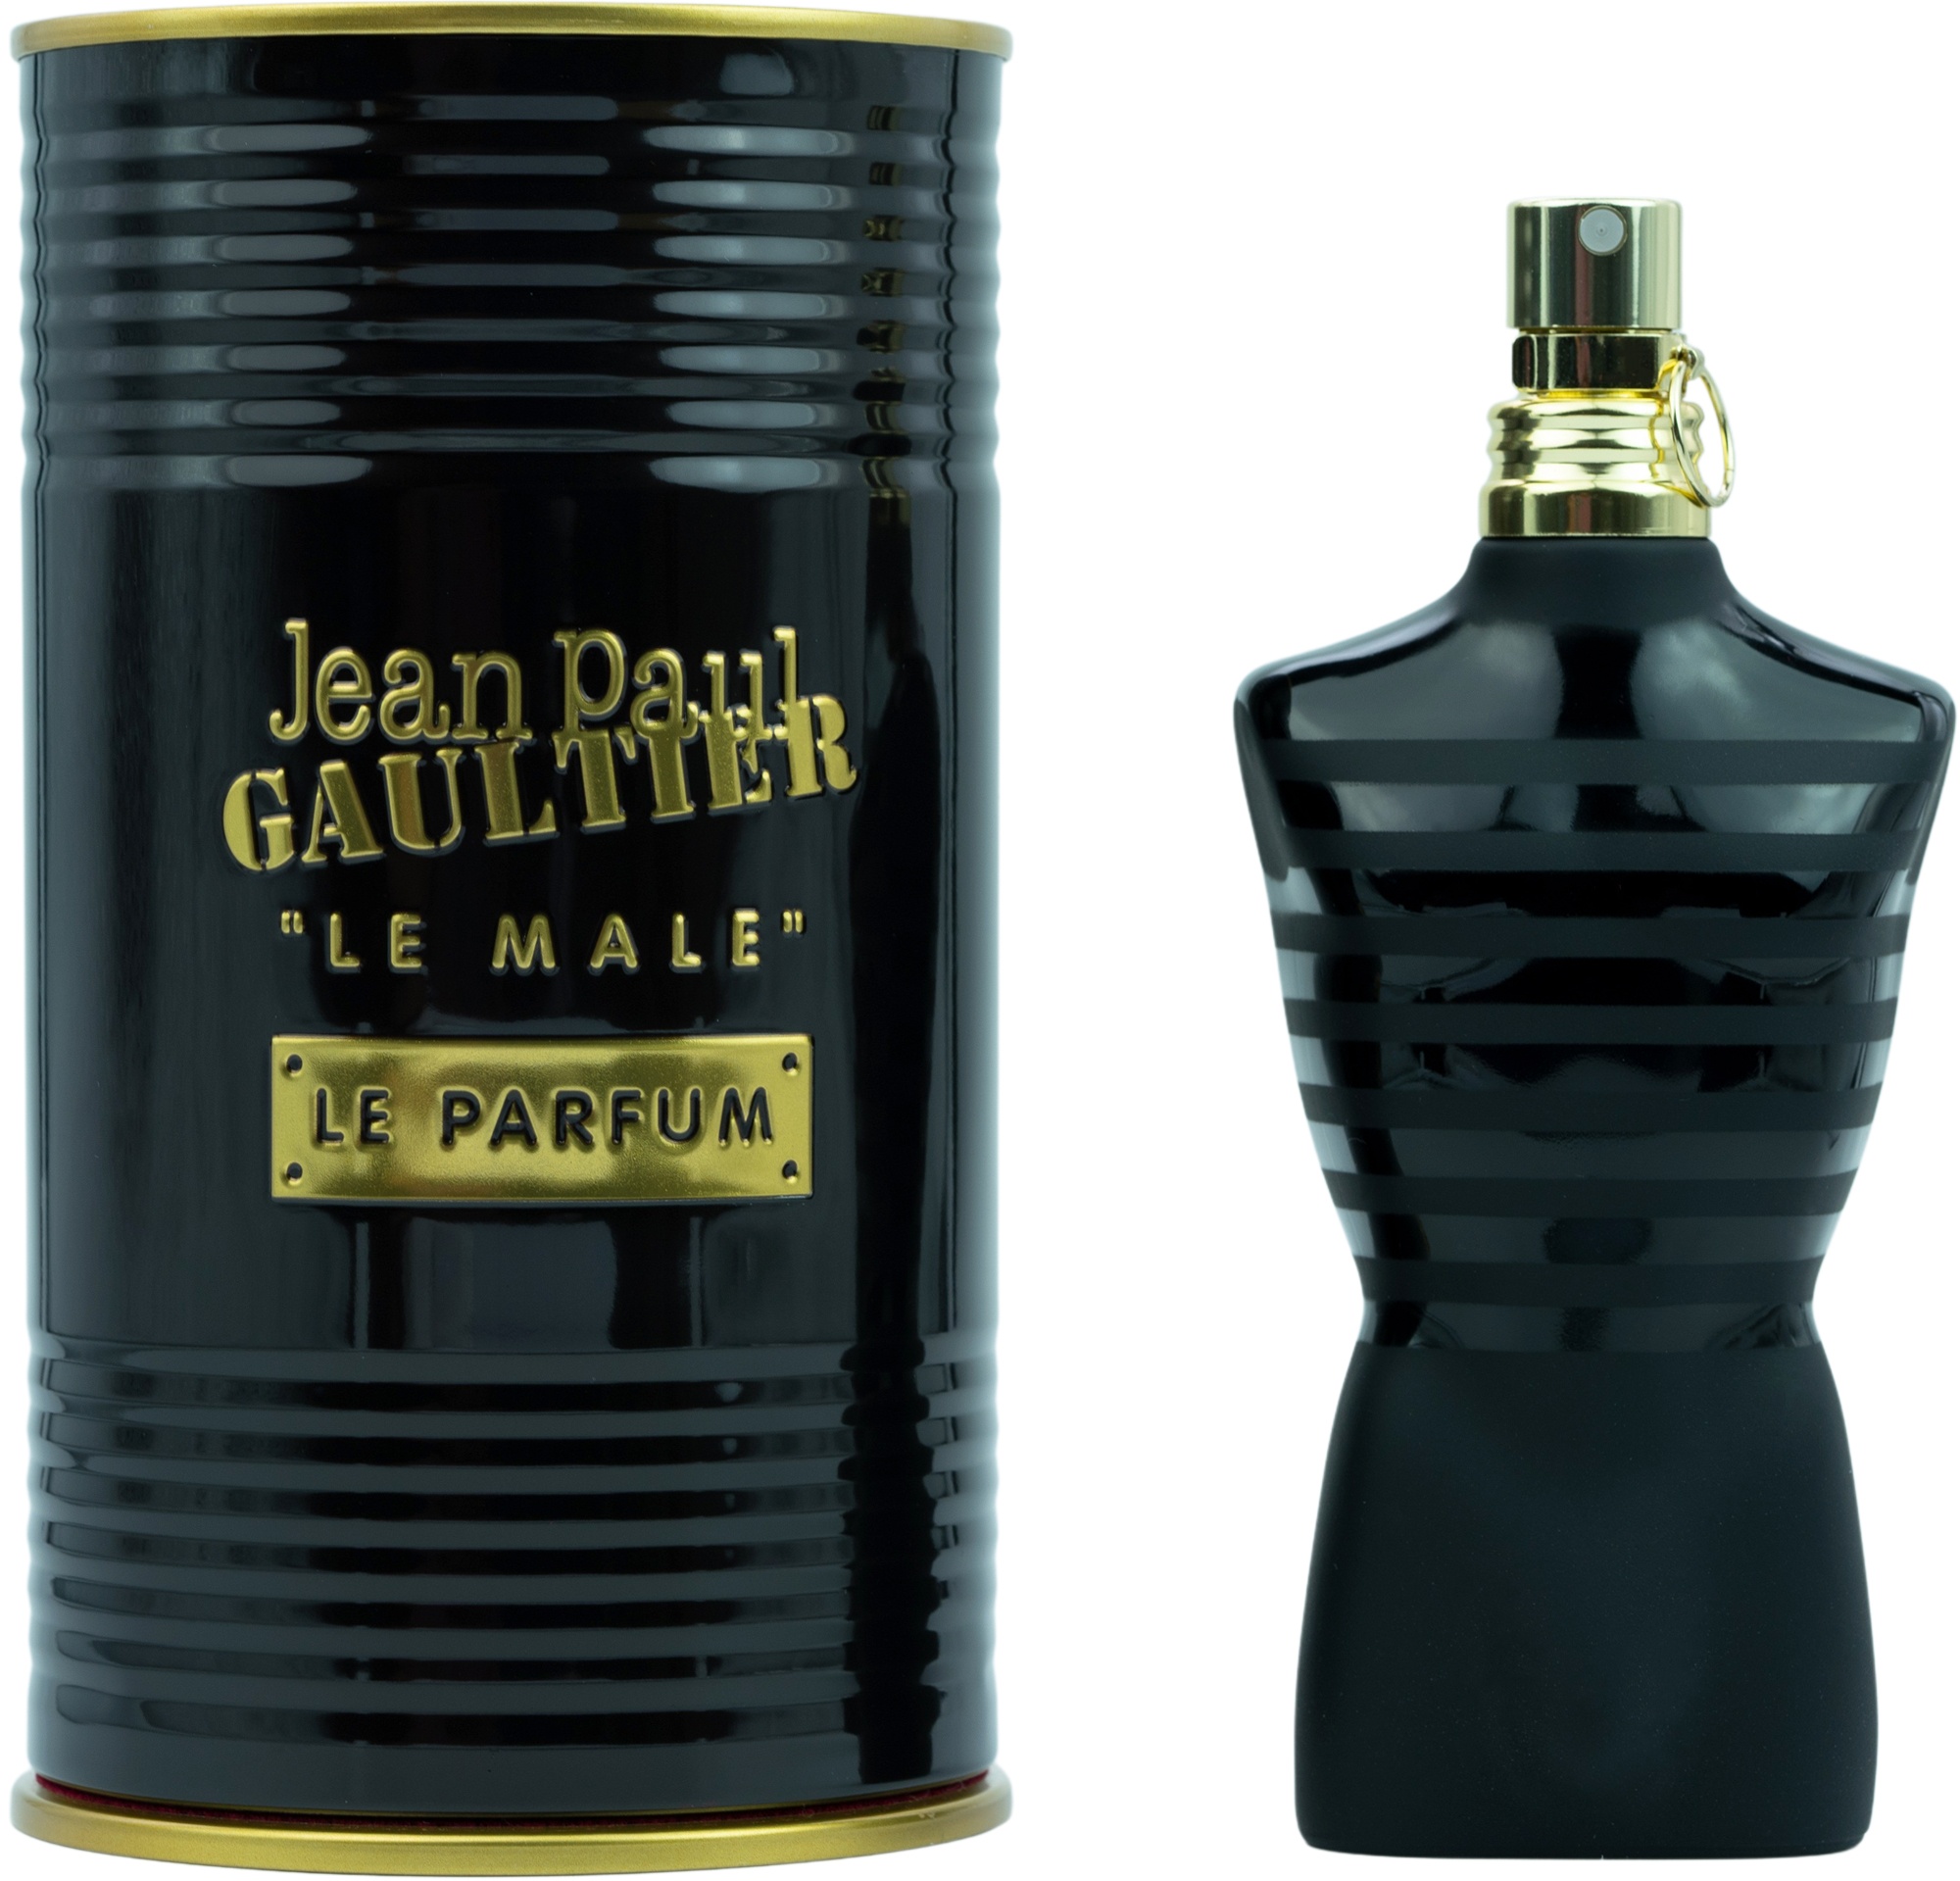 Bild von Le Male Le Parfum Eau de Parfum 200 ml